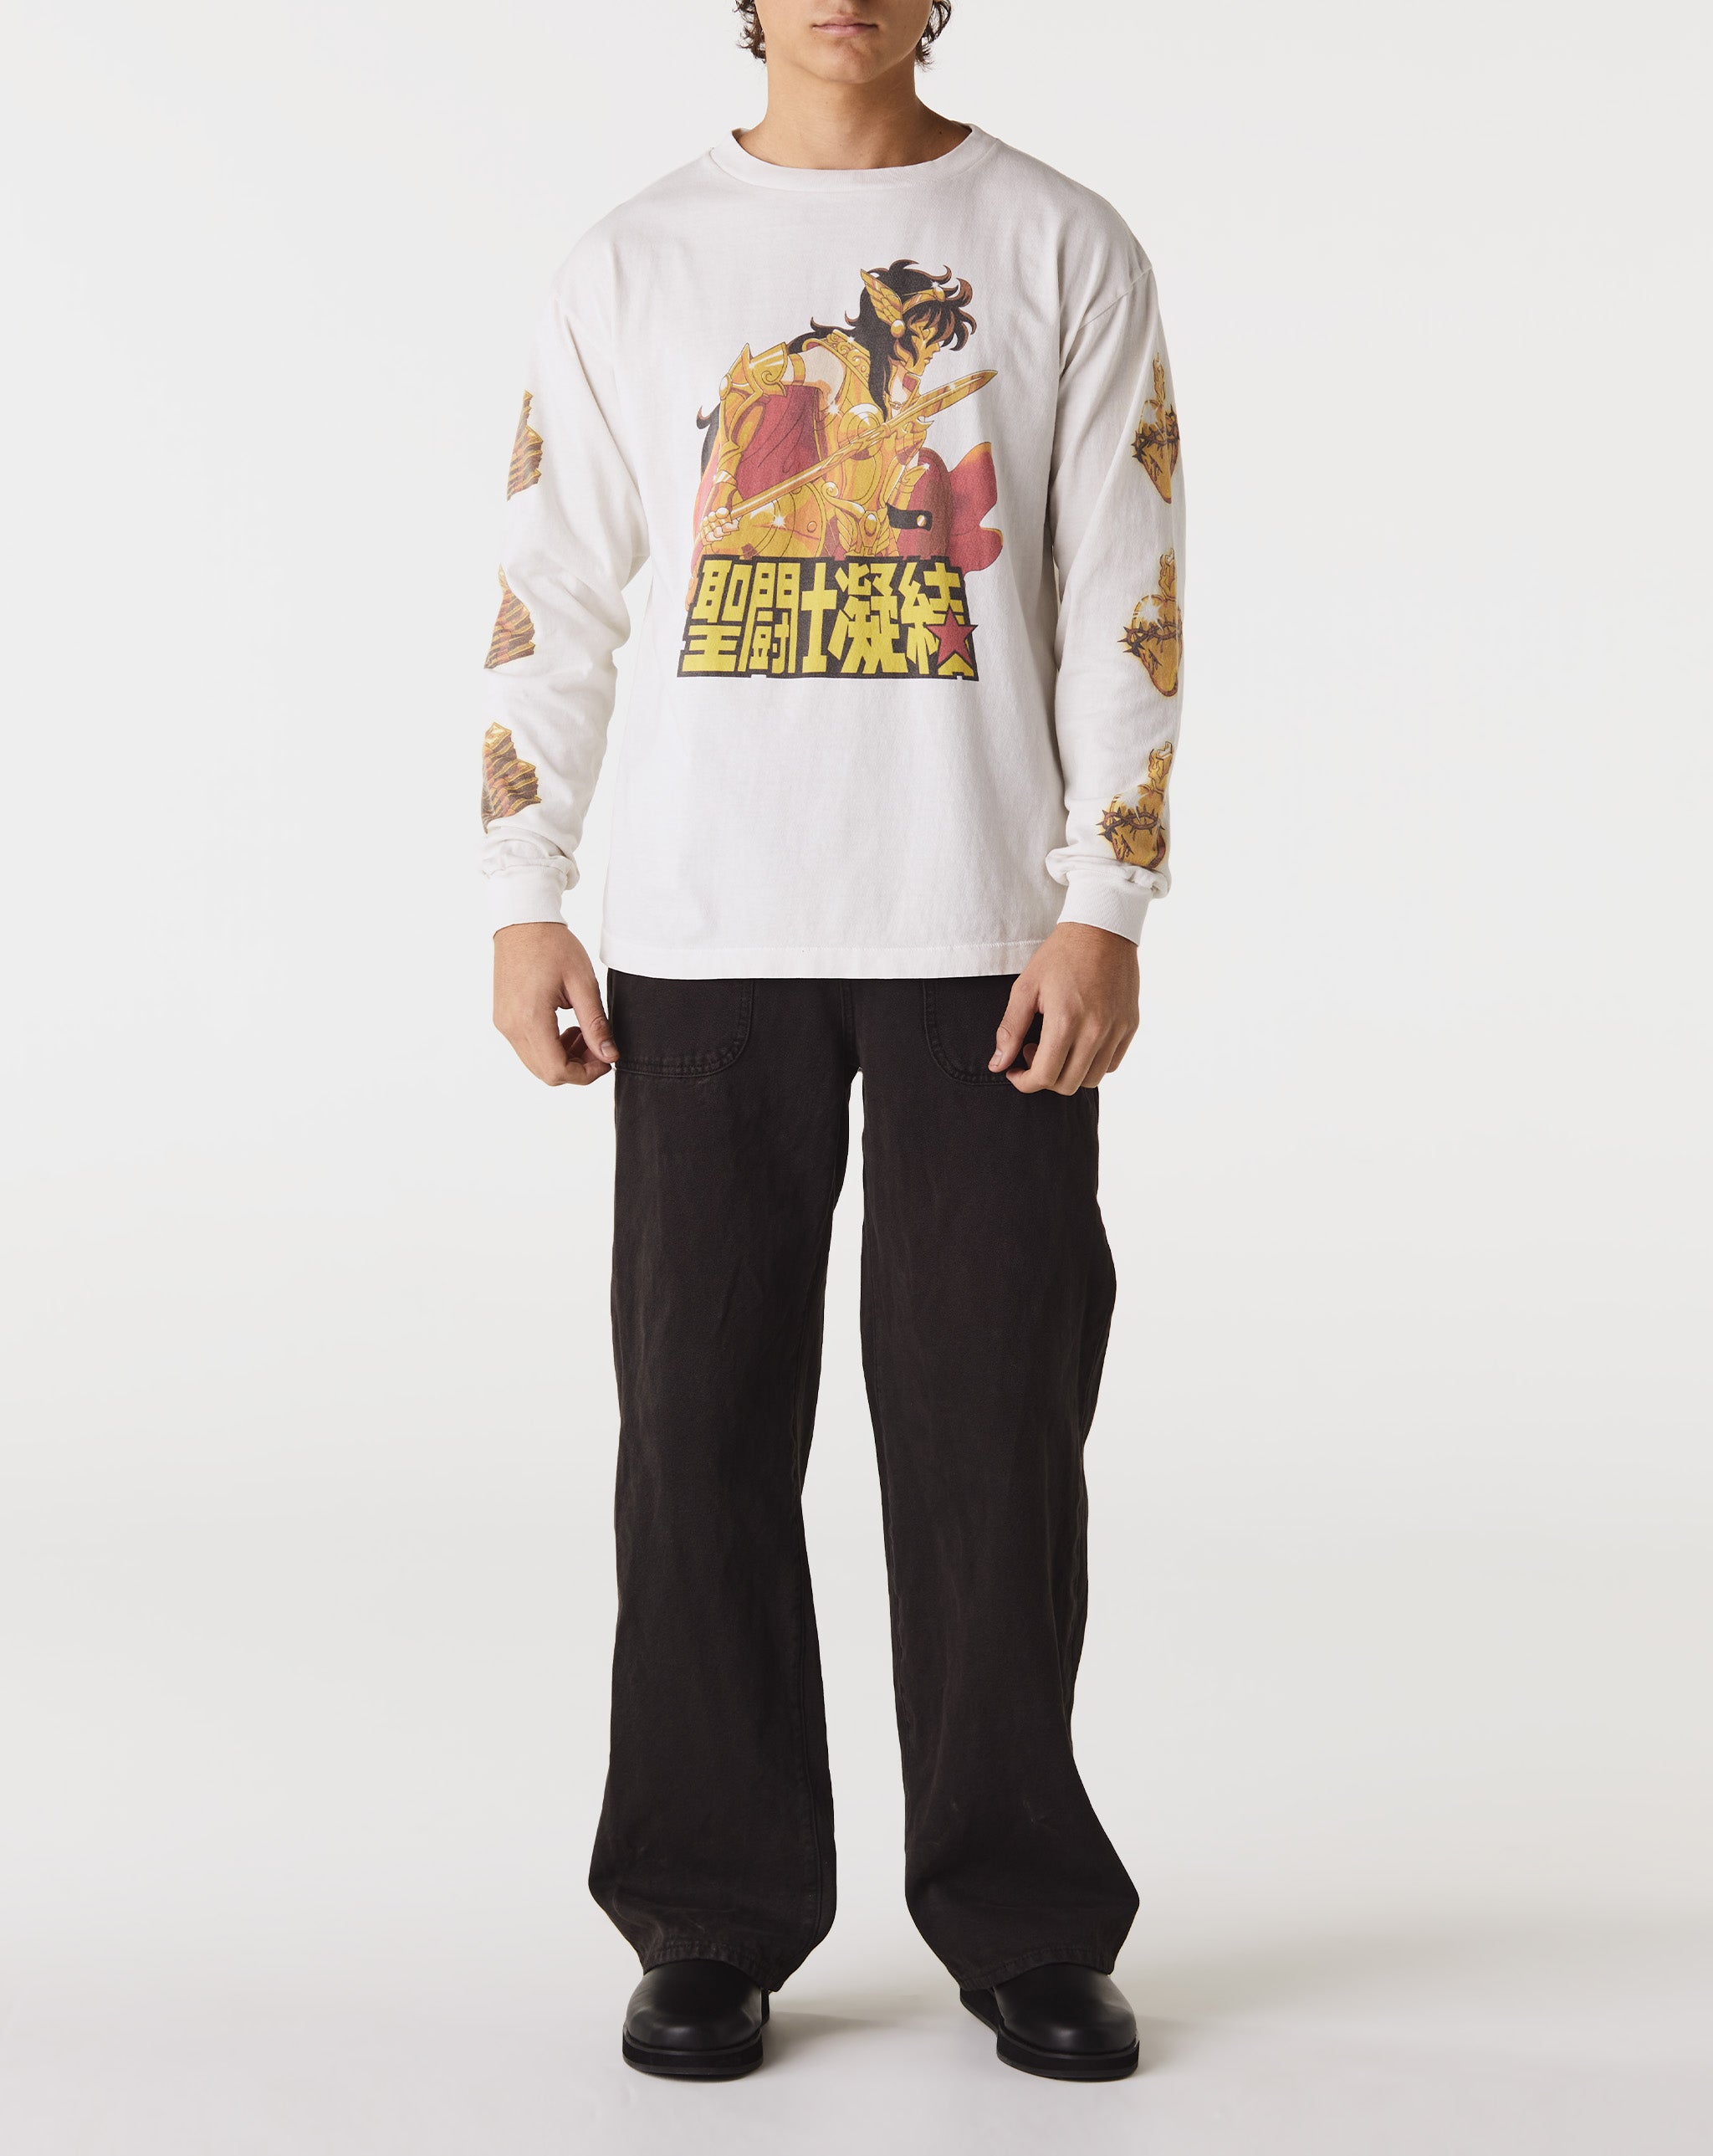 Saint Michael Oliver Resort Shirt  - Cheap Urlfreeze Jordan outlet